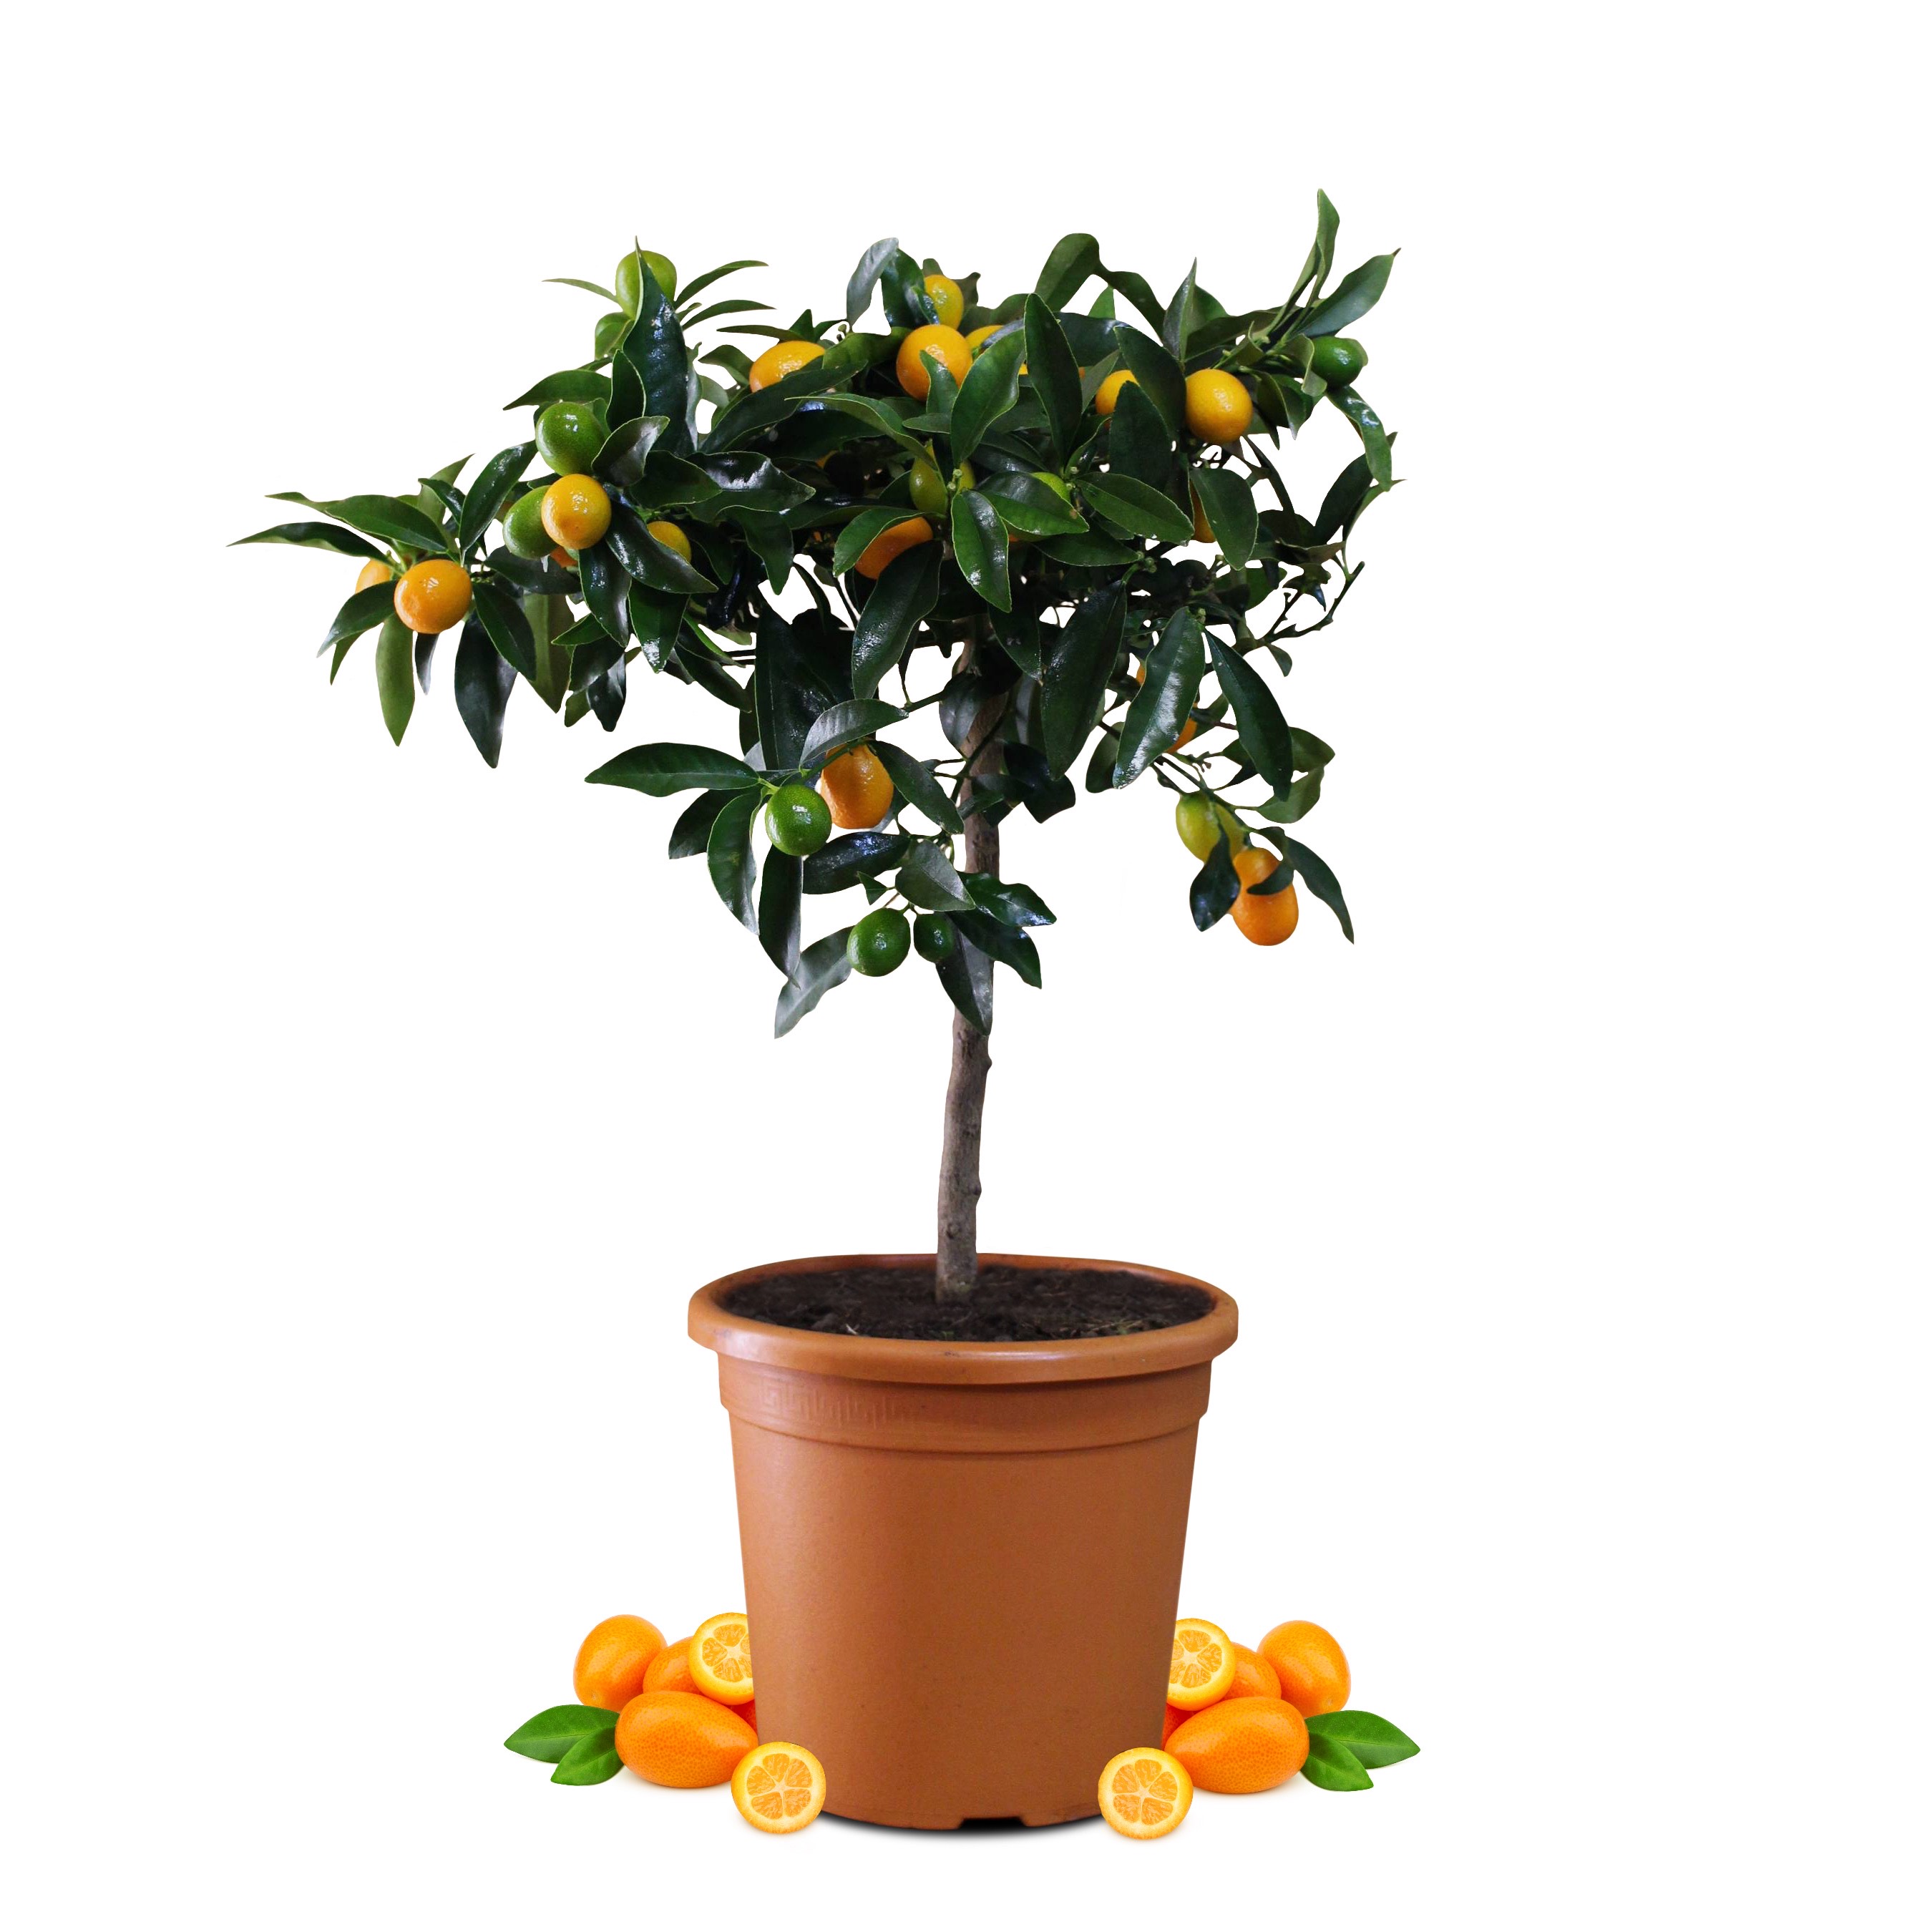 Kumquat - Citrus japonica - Fortunella margarita